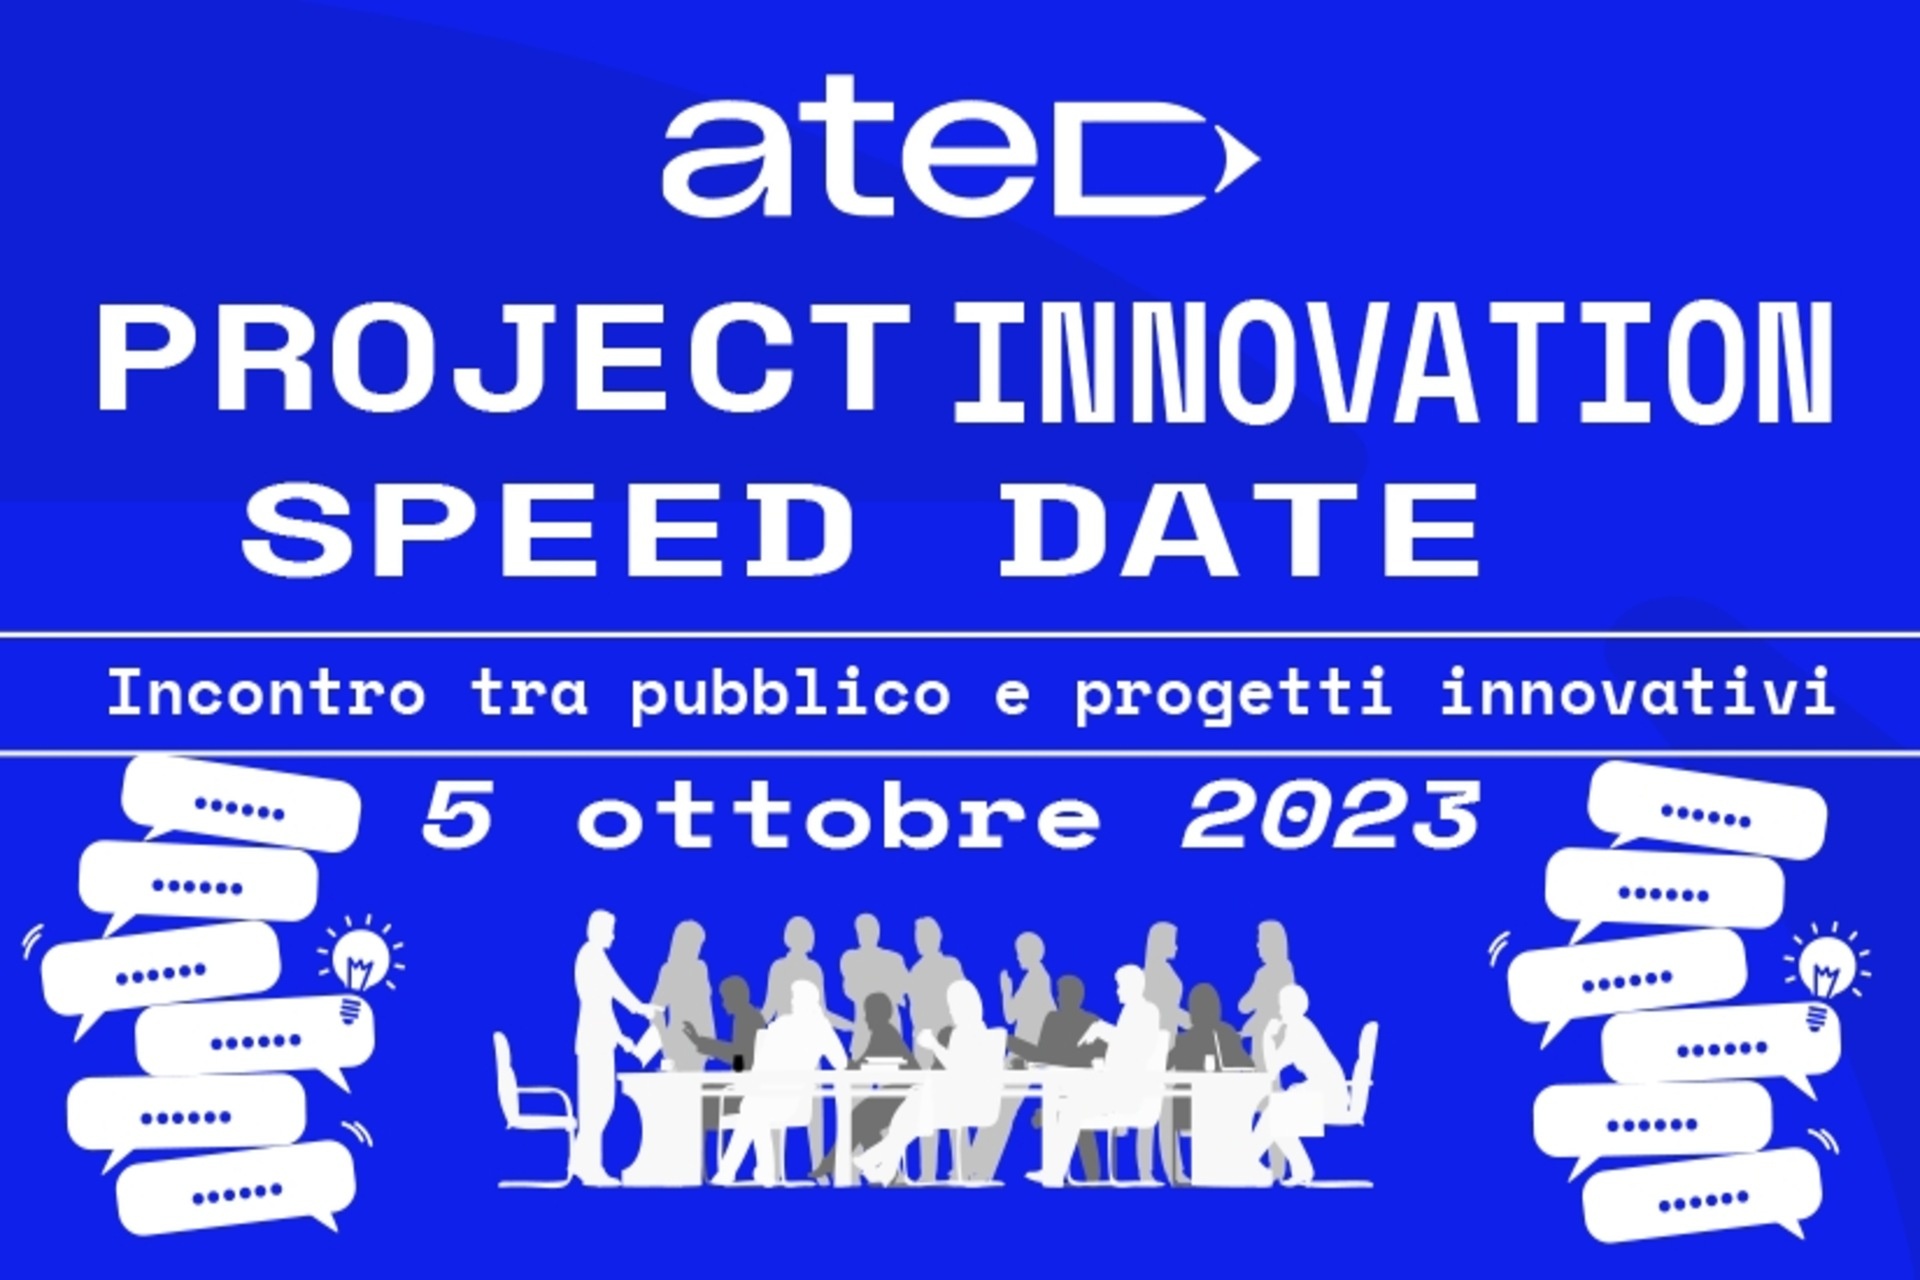 प्रोजेक्ट्स: ATED प्रोजेक्ट इनोवेशन स्पीड डेट का पोस्टर